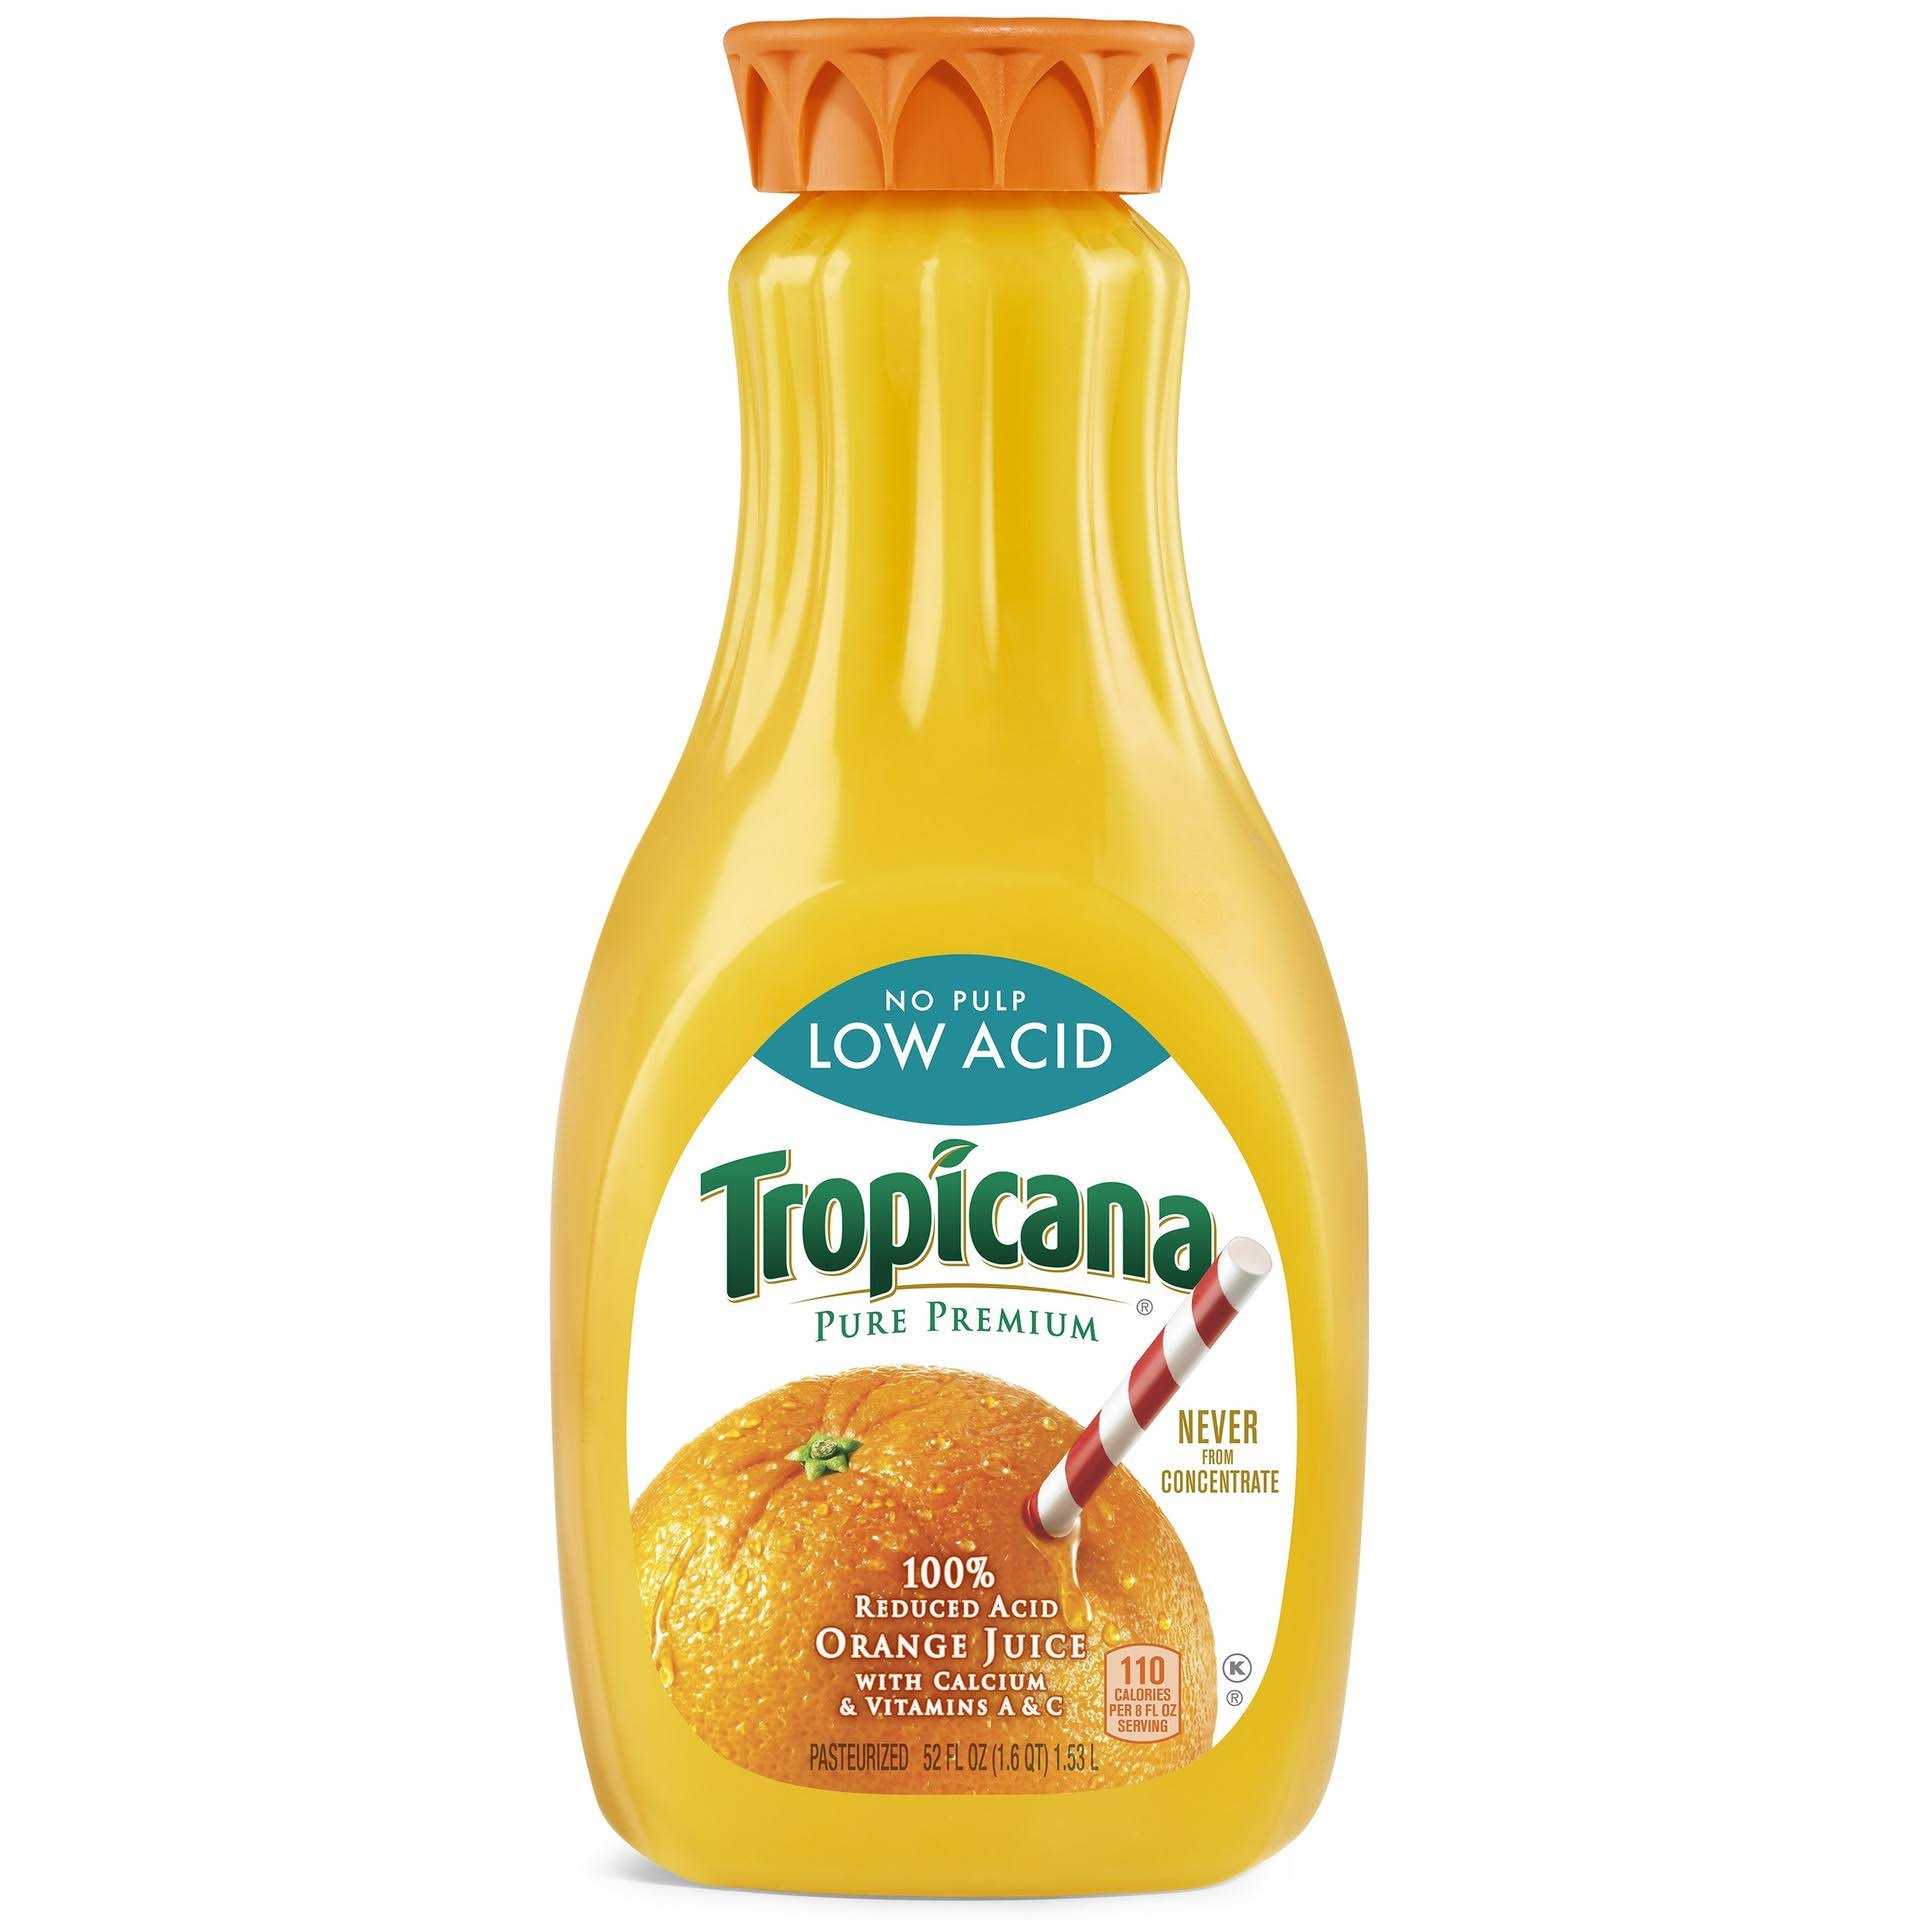 Tropicana 100% Juice, Low Acid, Orange, No Pulp - 52 fl oz